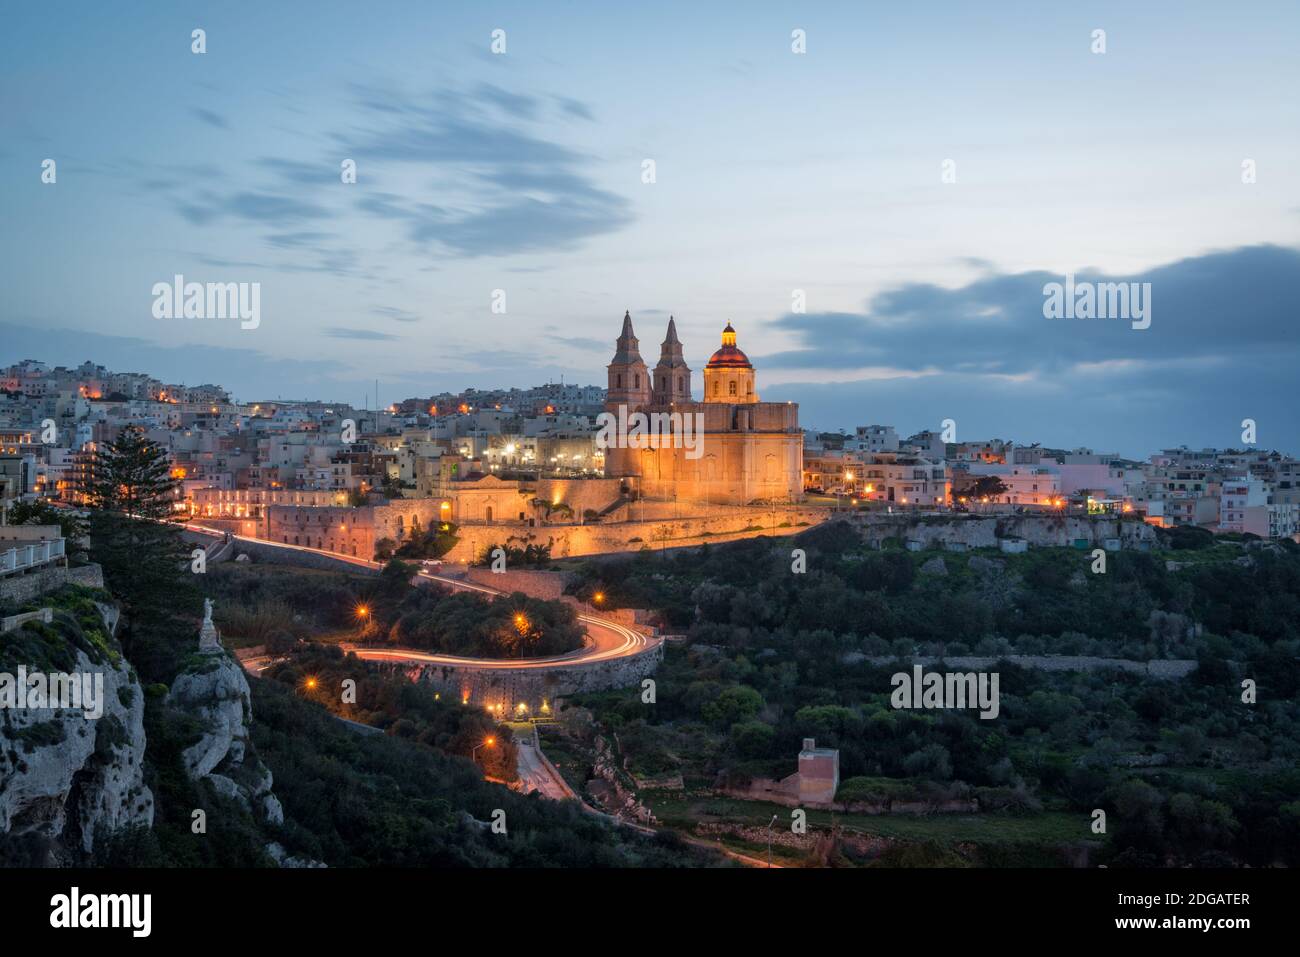 Santuario de nuestra Señora de Mellieħa, la catedral en la cima de la colina en Mellieha, Malta por la noche Foto de stock